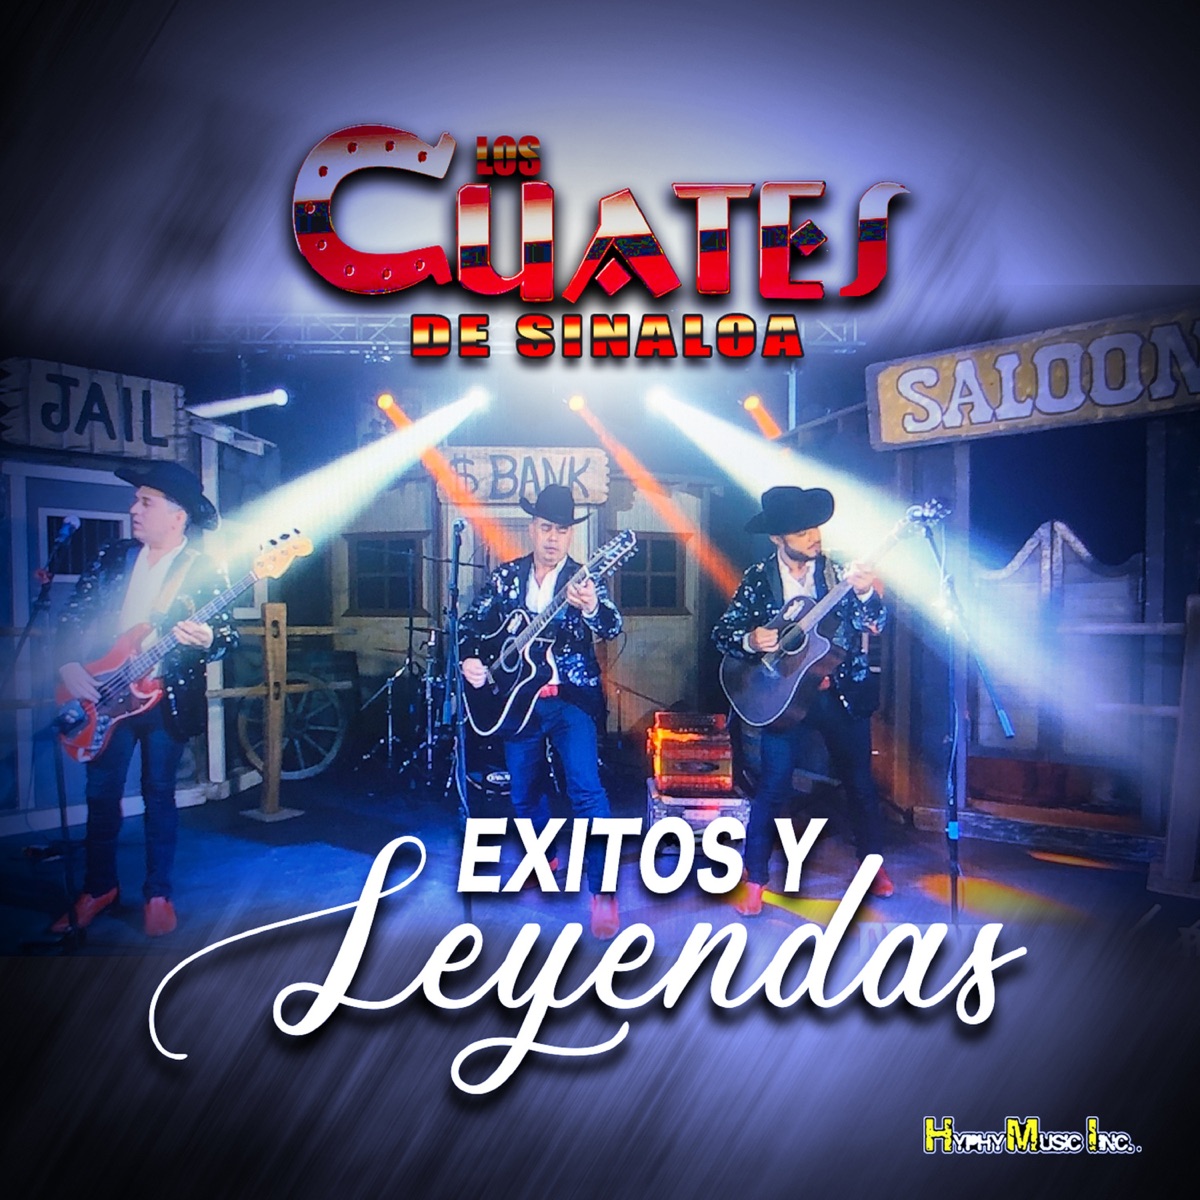 Pegando Con Tuba - Album by Los Cuates de Sinaloa - Apple Music